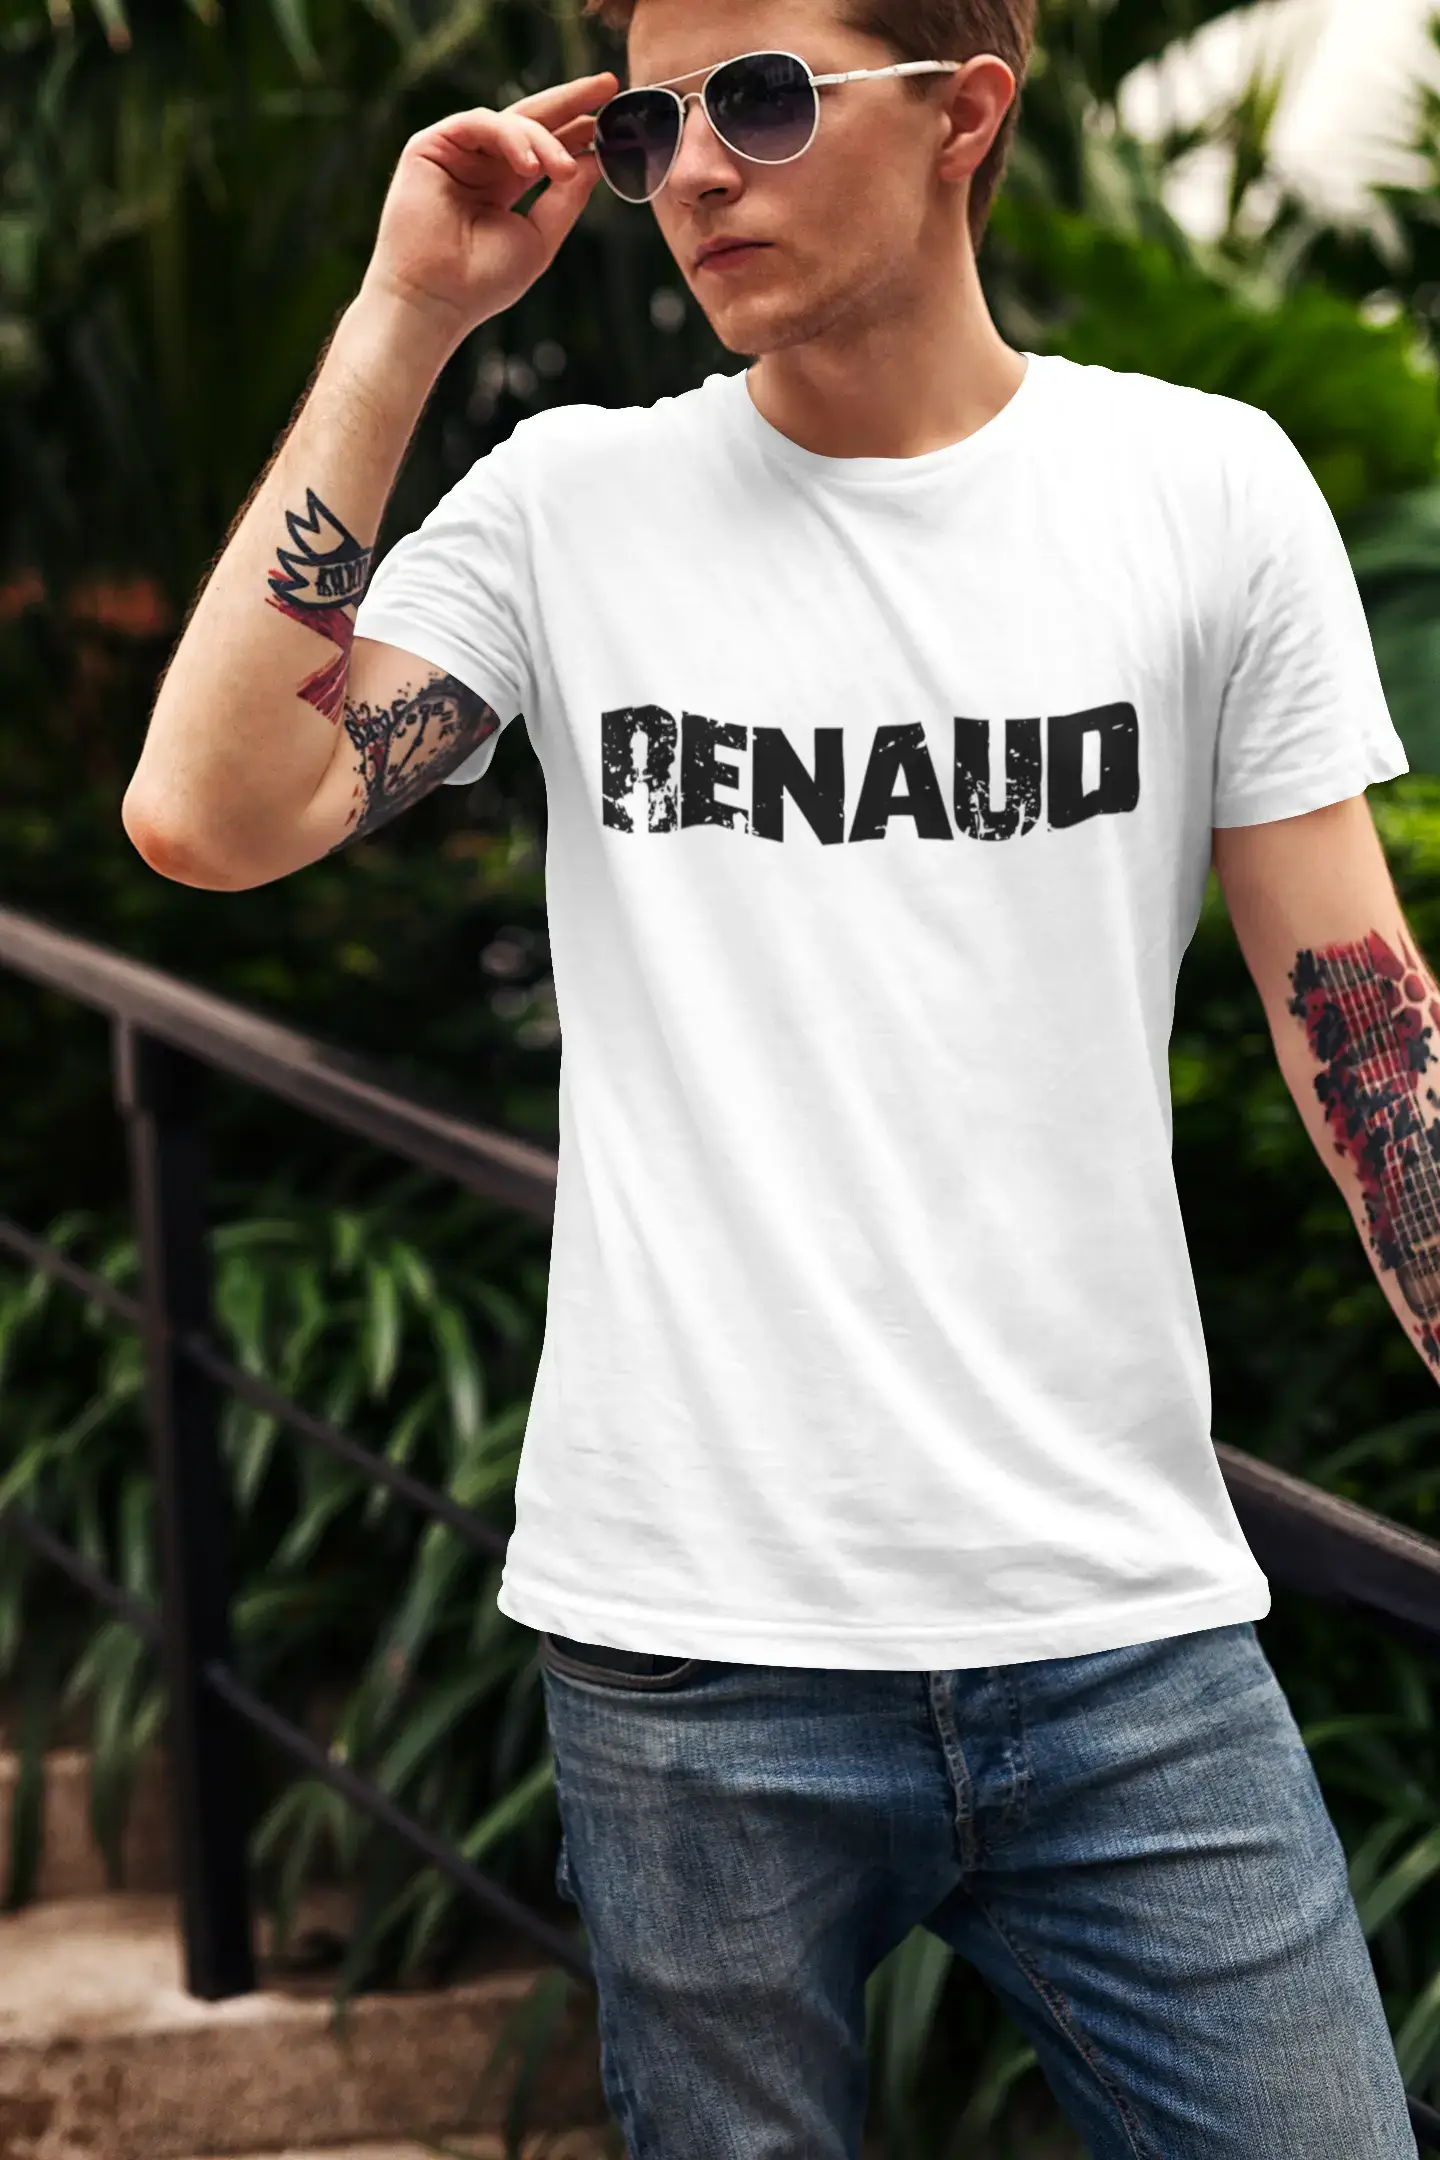 Ultrabasic ® Homme Graphique Imprimé Impressionnant nom de Famille Tée-Shirt Idées de Cadeau Tee Shirt Renaud